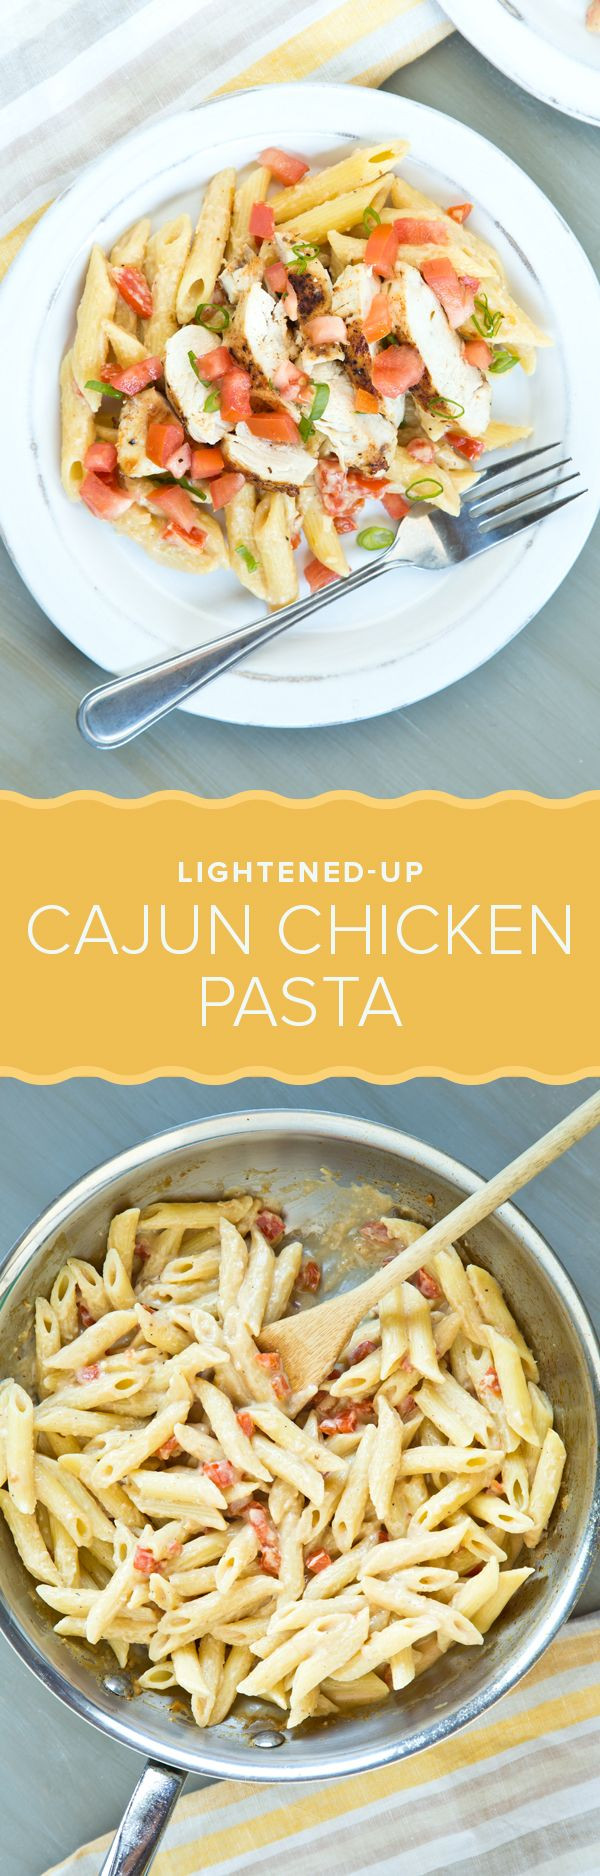 Low Calorie Pasta Recipes
 25 best ideas about Low calorie pasta on Pinterest